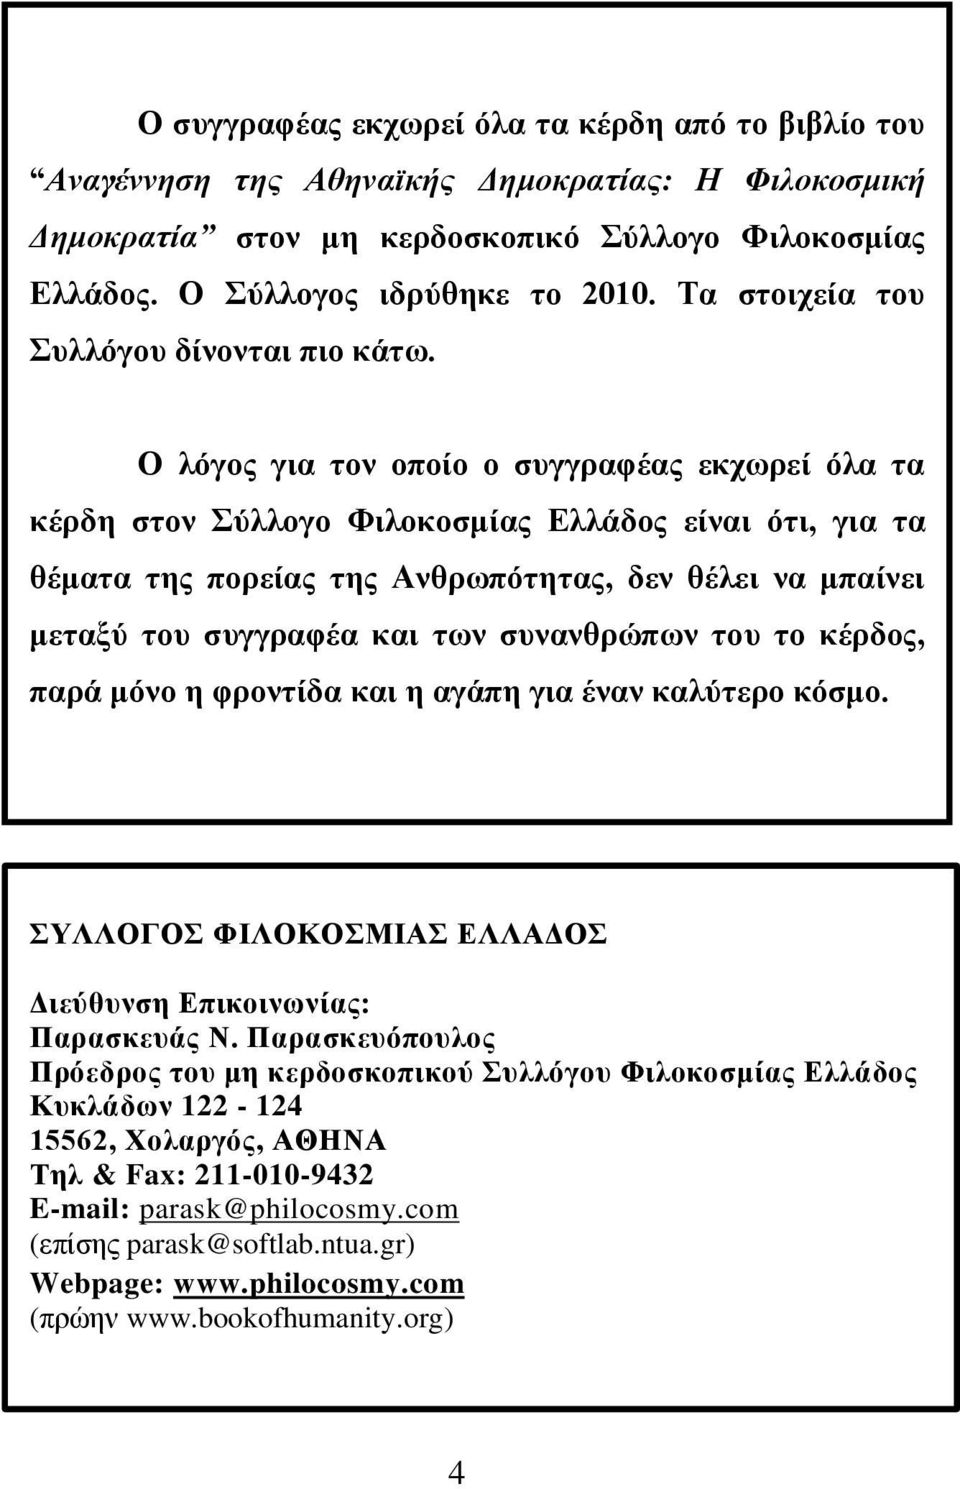 Ο λόγος για τον οποίο ο συγγραφέας εκχωρεί όλα τα κέρδη στον Σύλλογο Φιλοκοσμίας Ελλάδος είναι ότι, για τα θέματα της πορείας της Ανθρωπότητας, δεν θέλει να μπαίνει μεταξύ του συγγραφέα και των